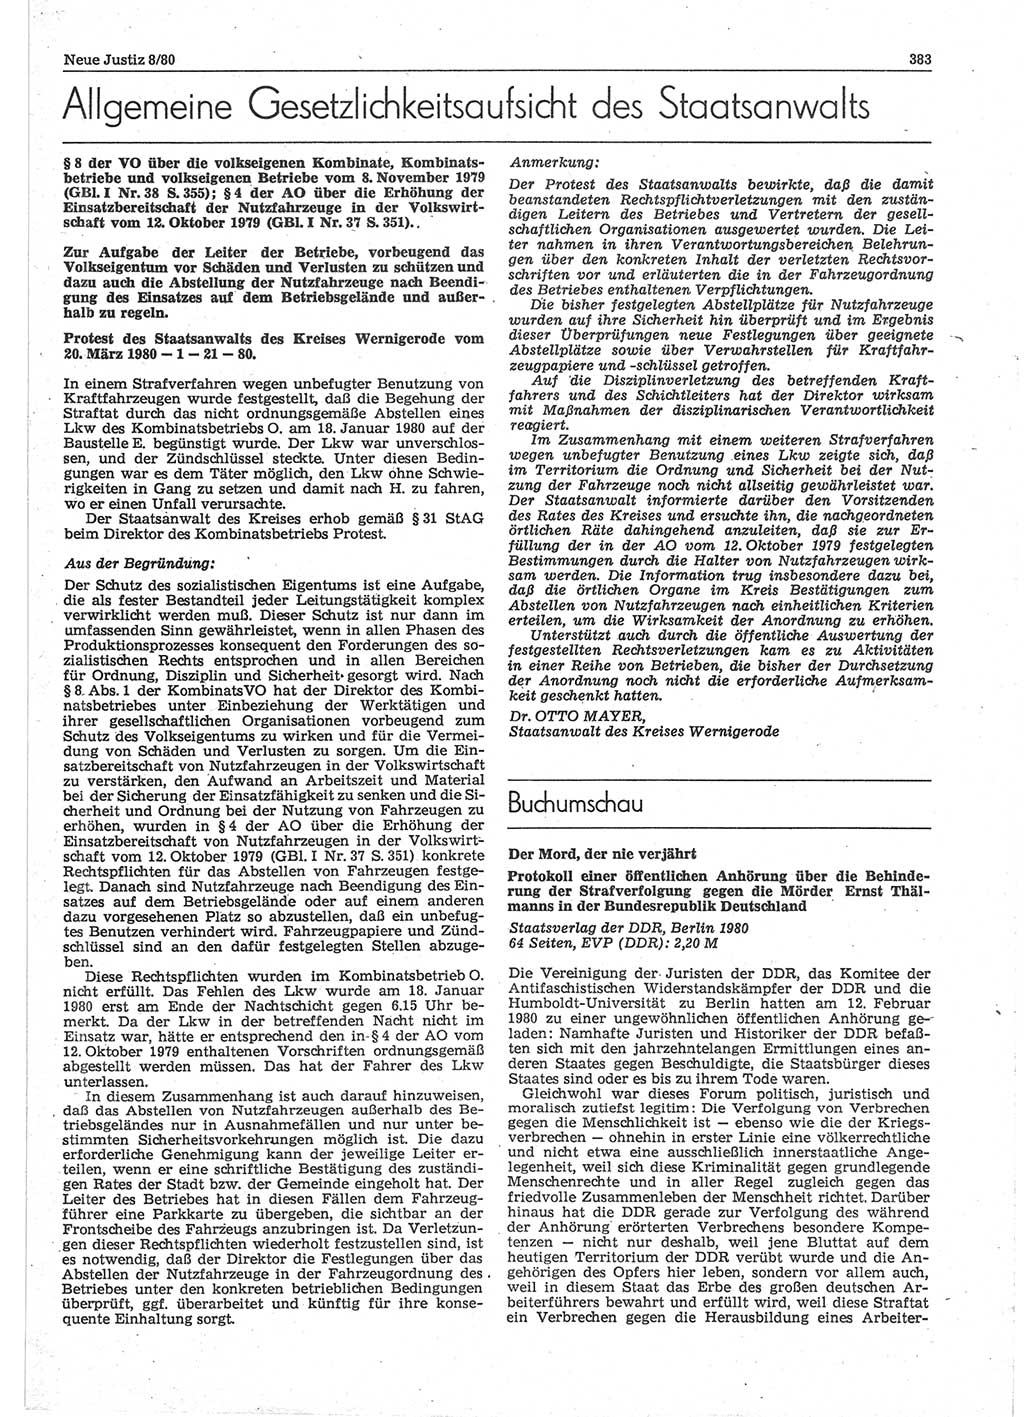 Neue Justiz (NJ), Zeitschrift für sozialistisches Recht und Gesetzlichkeit [Deutsche Demokratische Republik (DDR)], 34. Jahrgang 1980, Seite 383 (NJ DDR 1980, S. 383)